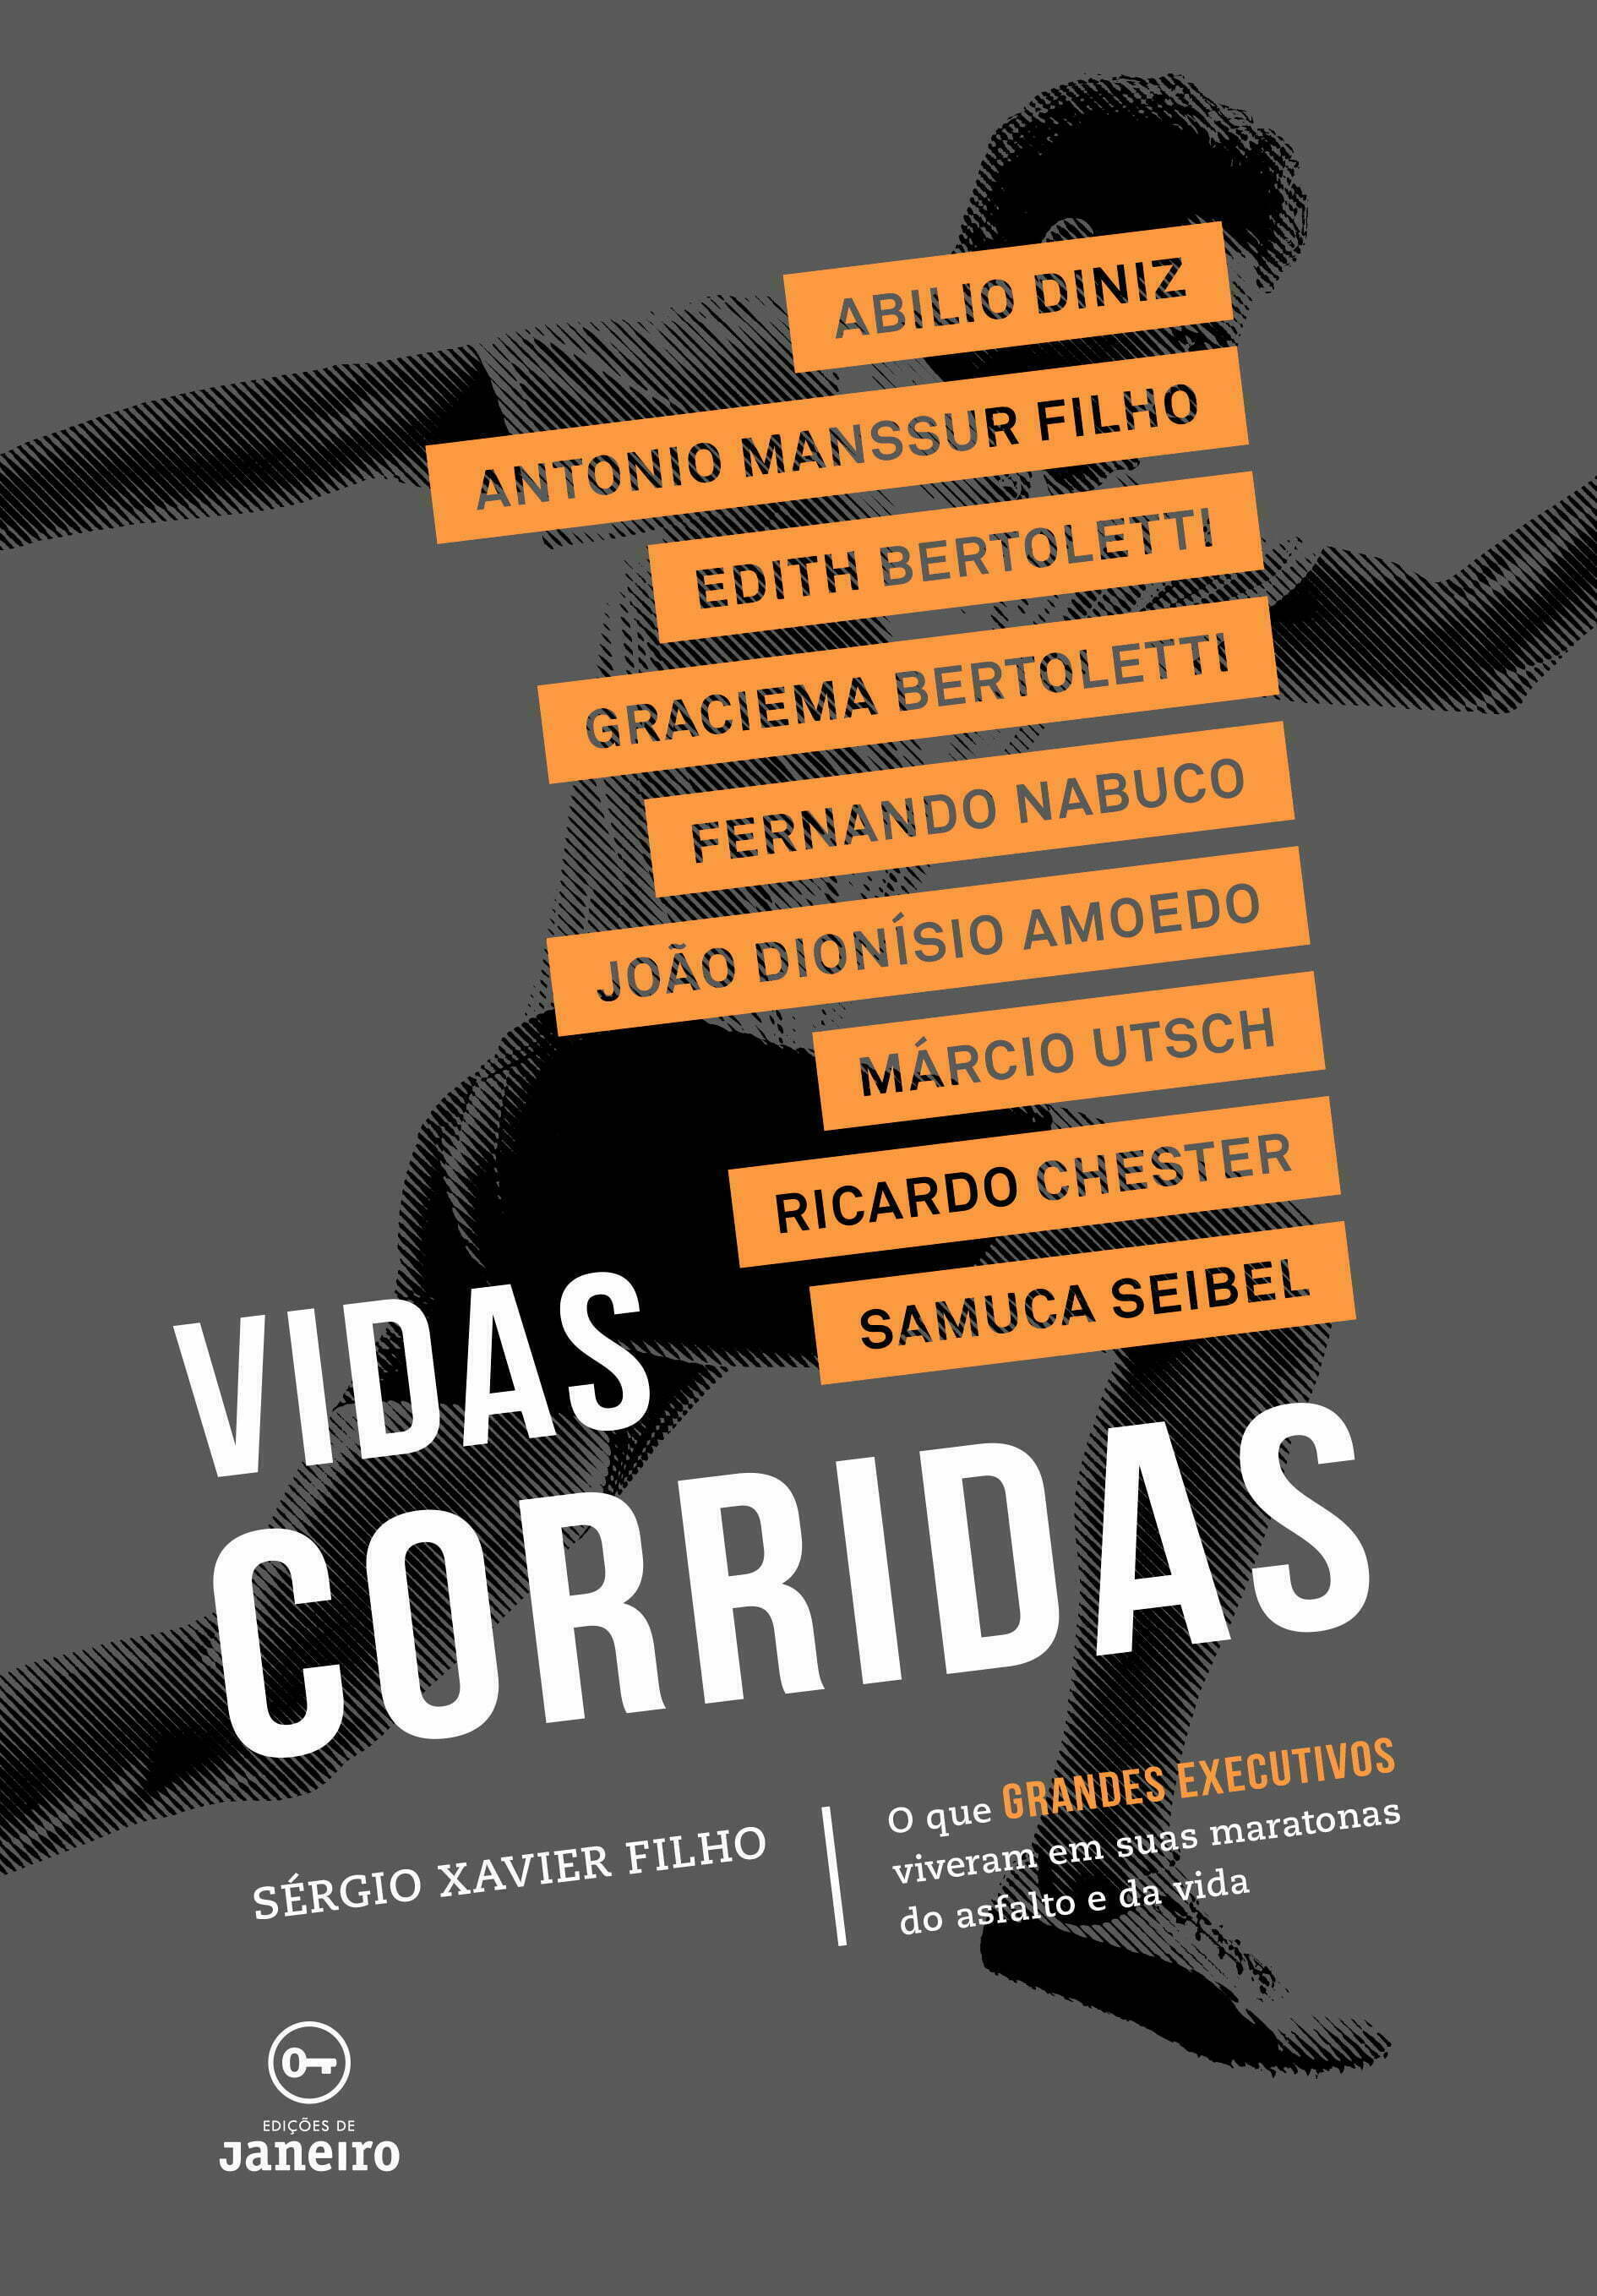 O novo livro de Sergio Xavier: nove personagens, nove histórias de sucesso profissional, muitas aventuras e maratonas realizadas.